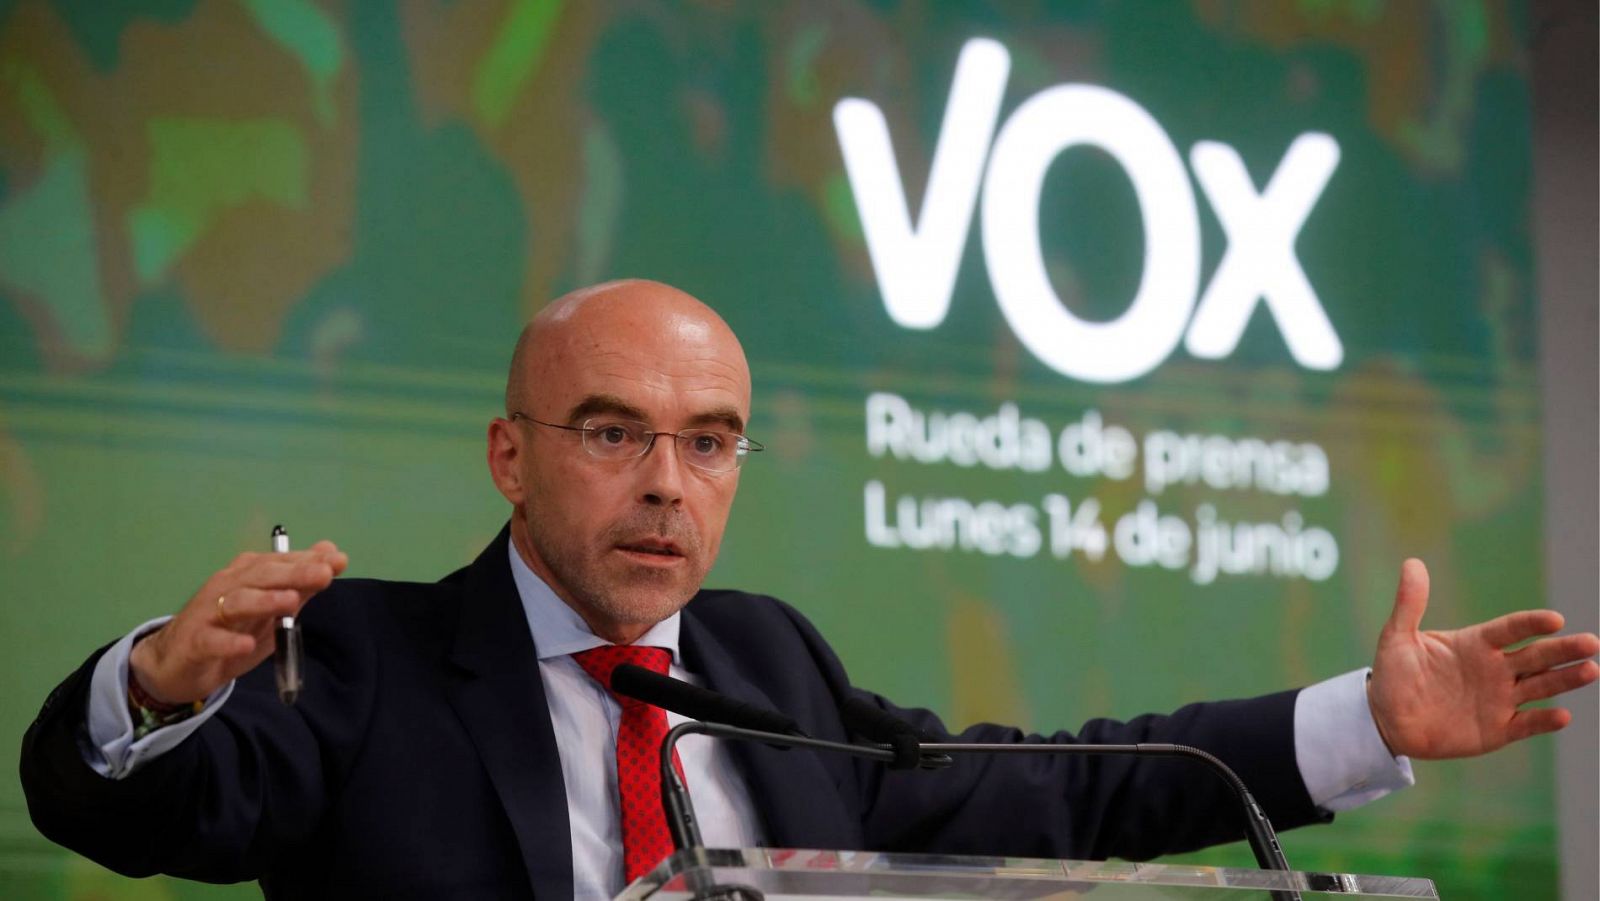 El portavoz de Vox, Jorge Buxadé, da una rueda de prensa en la sede del partido